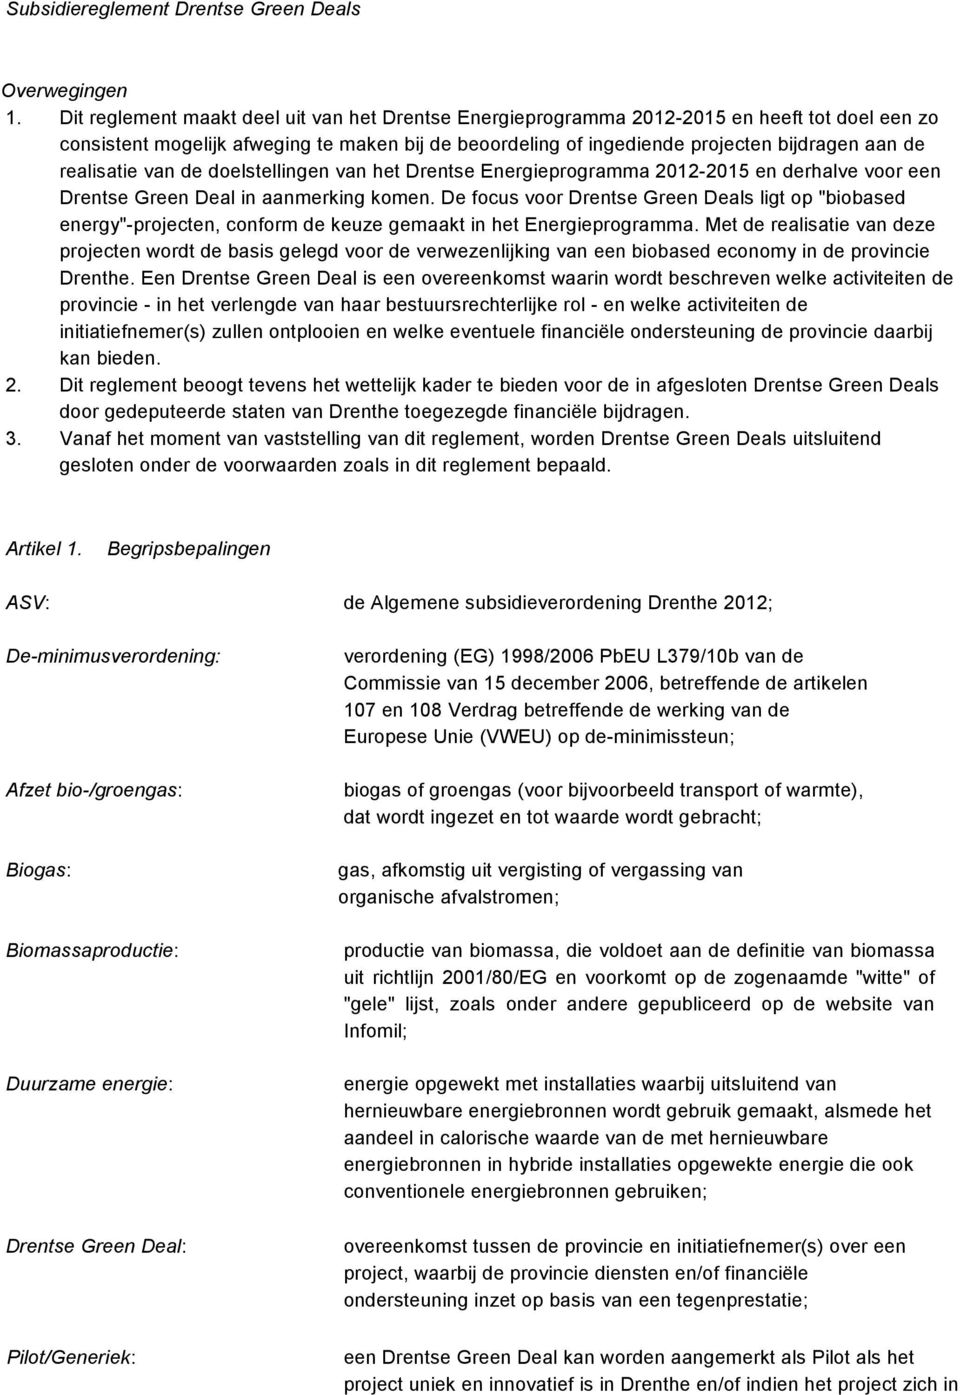 realisatie van de doelstellingen van het Drentse Energieprogramma 2012-2015 en derhalve voor een Drentse Green Deal in aanmerking komen.